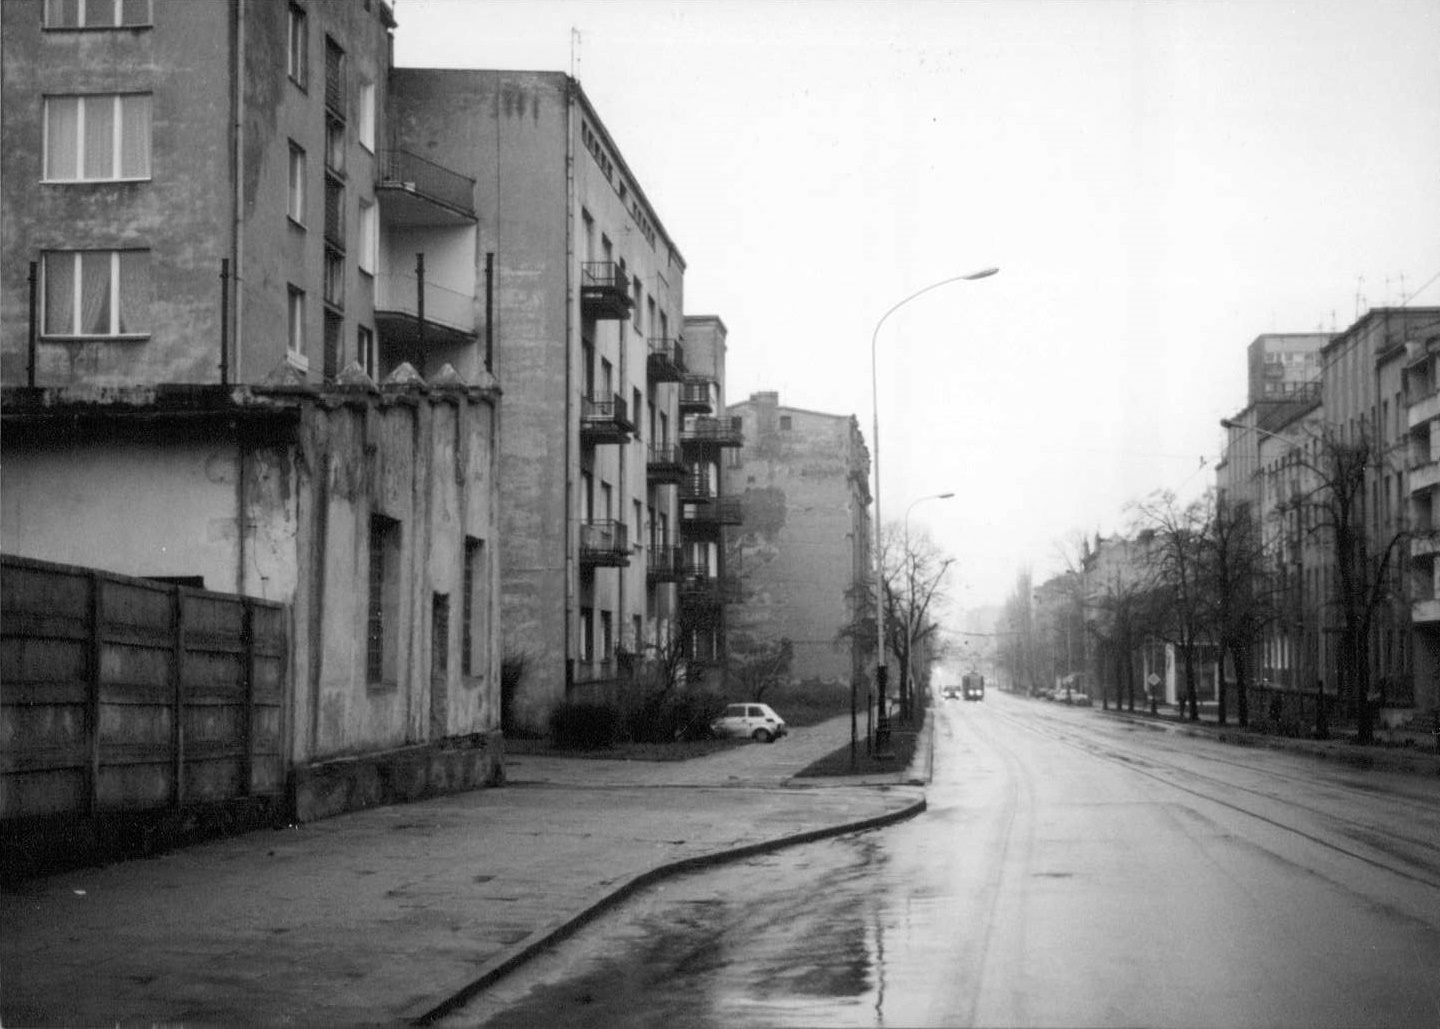 Łódź street scene, 1990